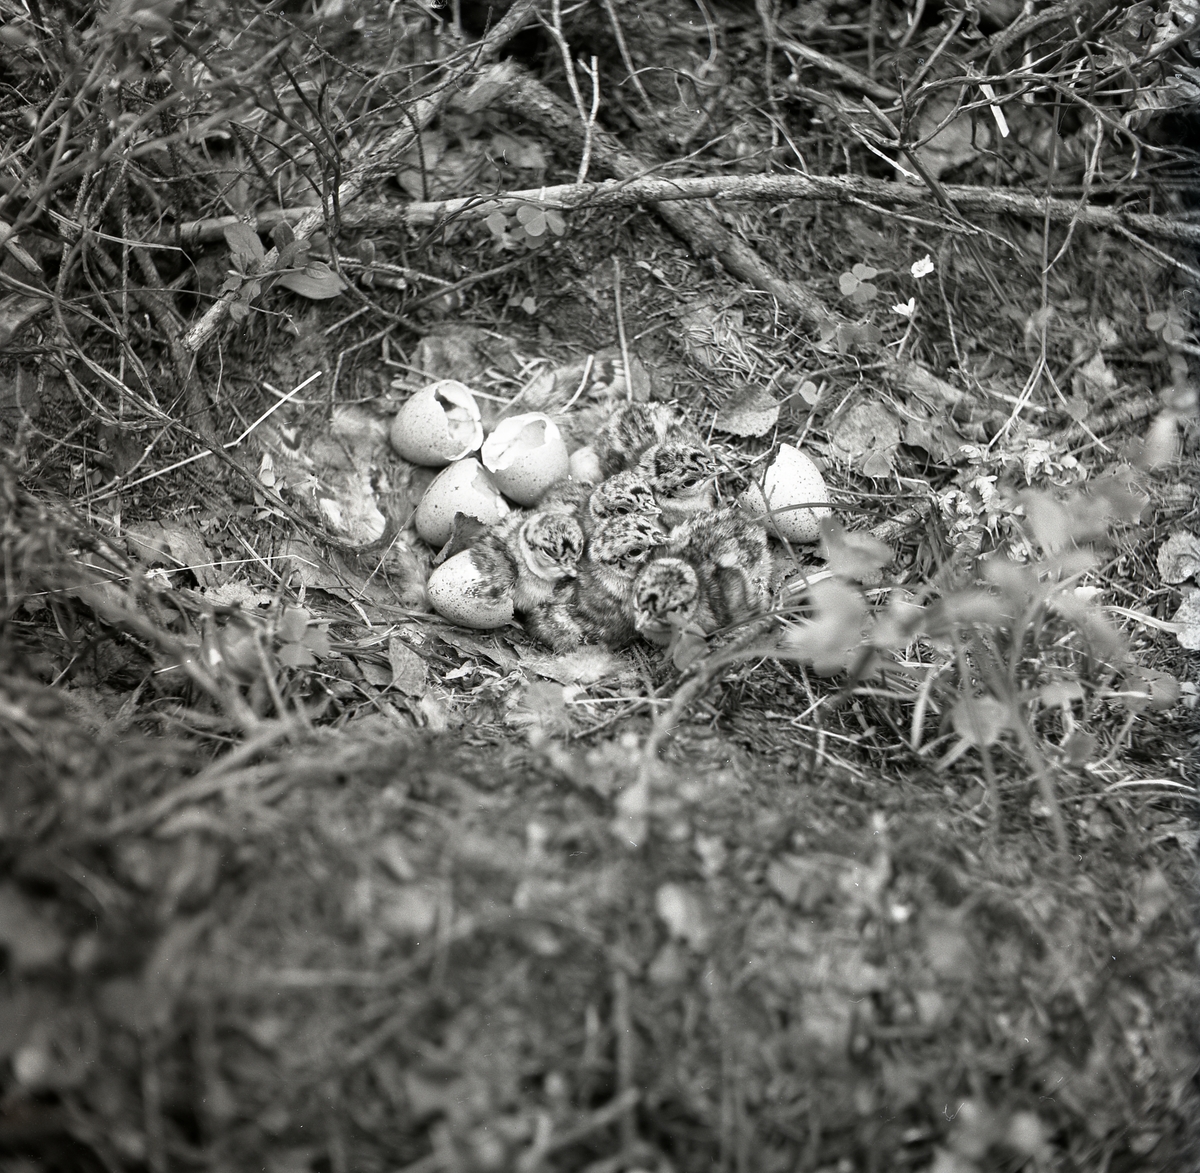 Små duniga fågelungar trycker sig tät intill varandra i fågelboet. Omkring dem ligger trasiga äggskal som ungarna kläckts ur. Fågelboet är placerat i en fördjupning omgiven av grenar och kvistar. Precis under de små fågelungarnas fötter ligger löv och fågeldun.